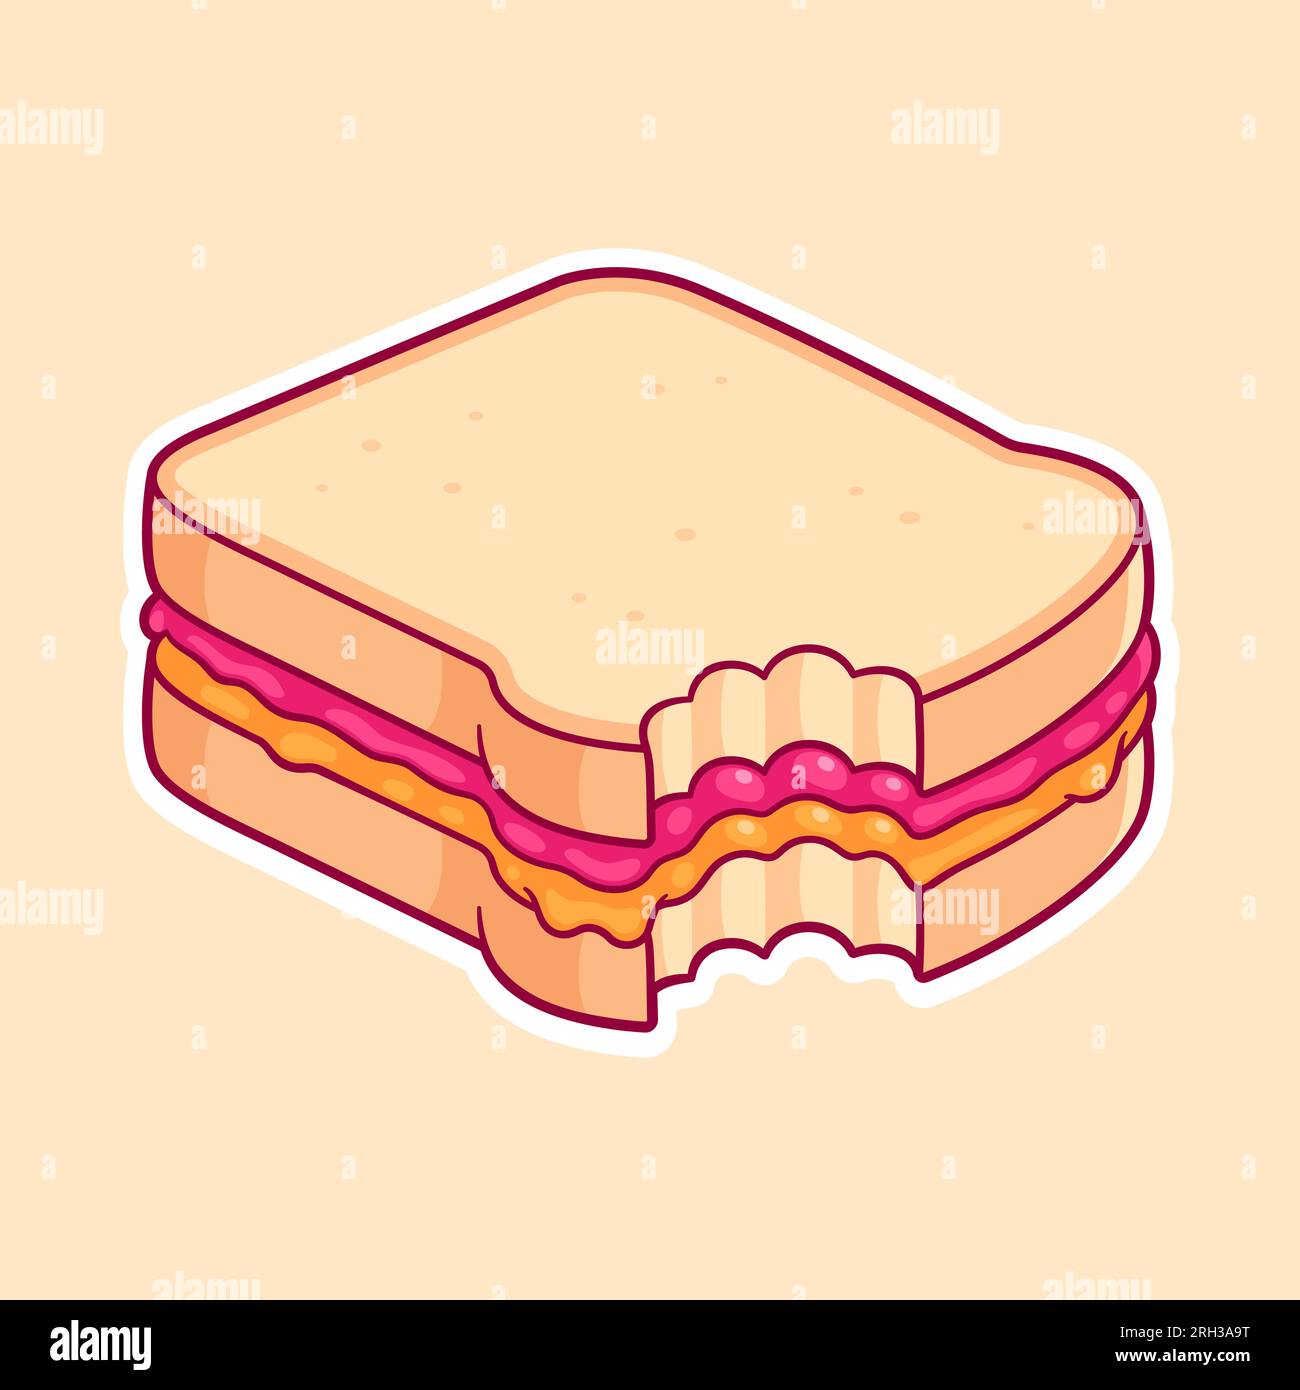 Disegno a sandwich PBJ con morso mancante. Pane tostato bianco con burro di arachidi e marmellata di lamponi. Carino illustrazione vettoriale dei cartoni animati. Illustrazione Vettoriale